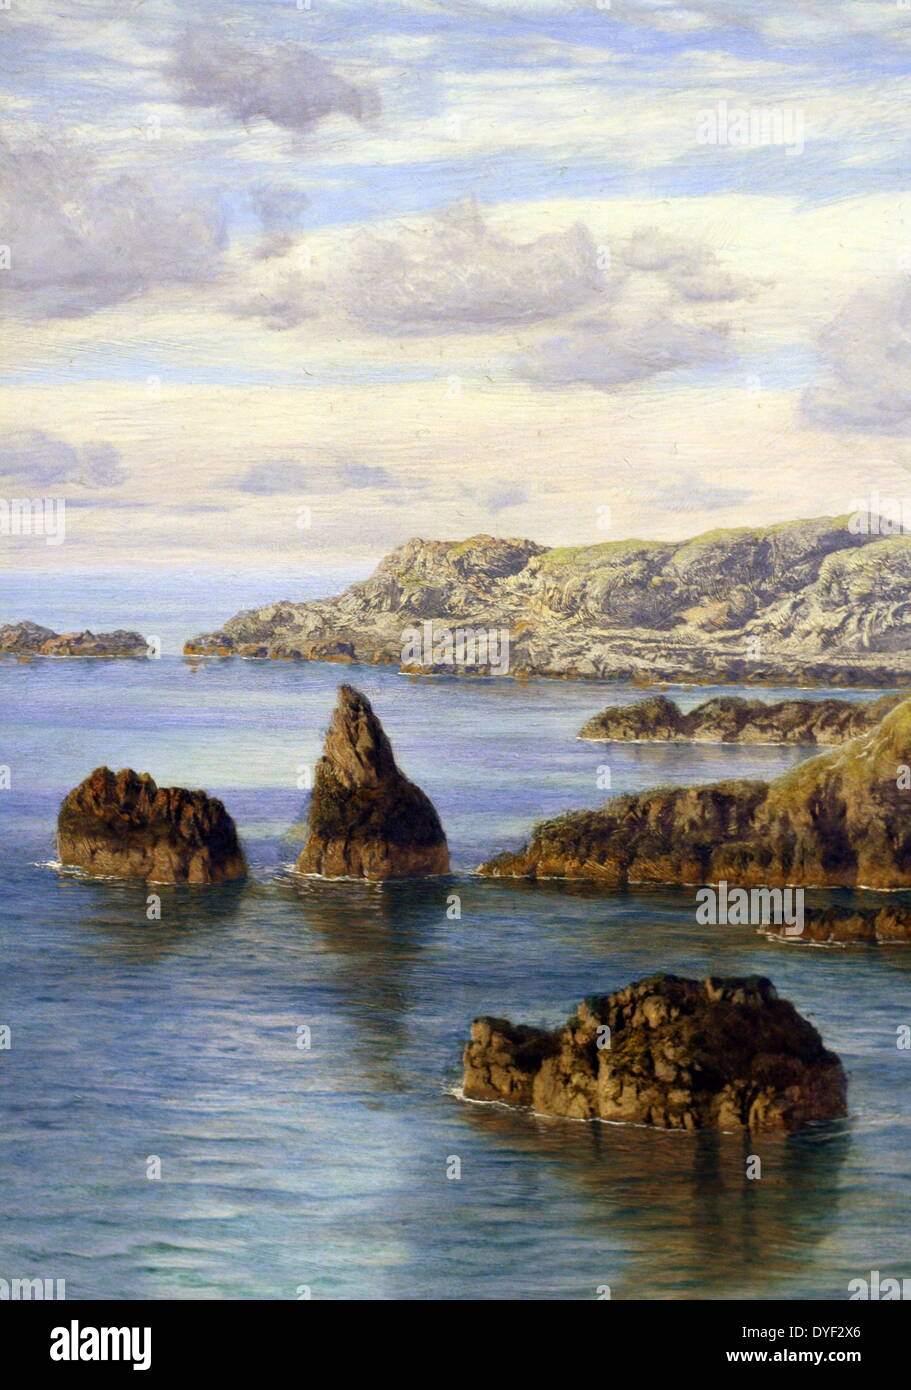 Die südliche Küste von Guernsey von John Brett. Landschaft Öl auf Leinwand, ca. 1875. Brett lebte zwischen 1831-1902. Dieses Gemälde zeigt seine Liebe für den Küsten- und Meereslandschaften. Die Landschaft in diesem Bild ist die Bucht von Moulin Huet. Stockfoto